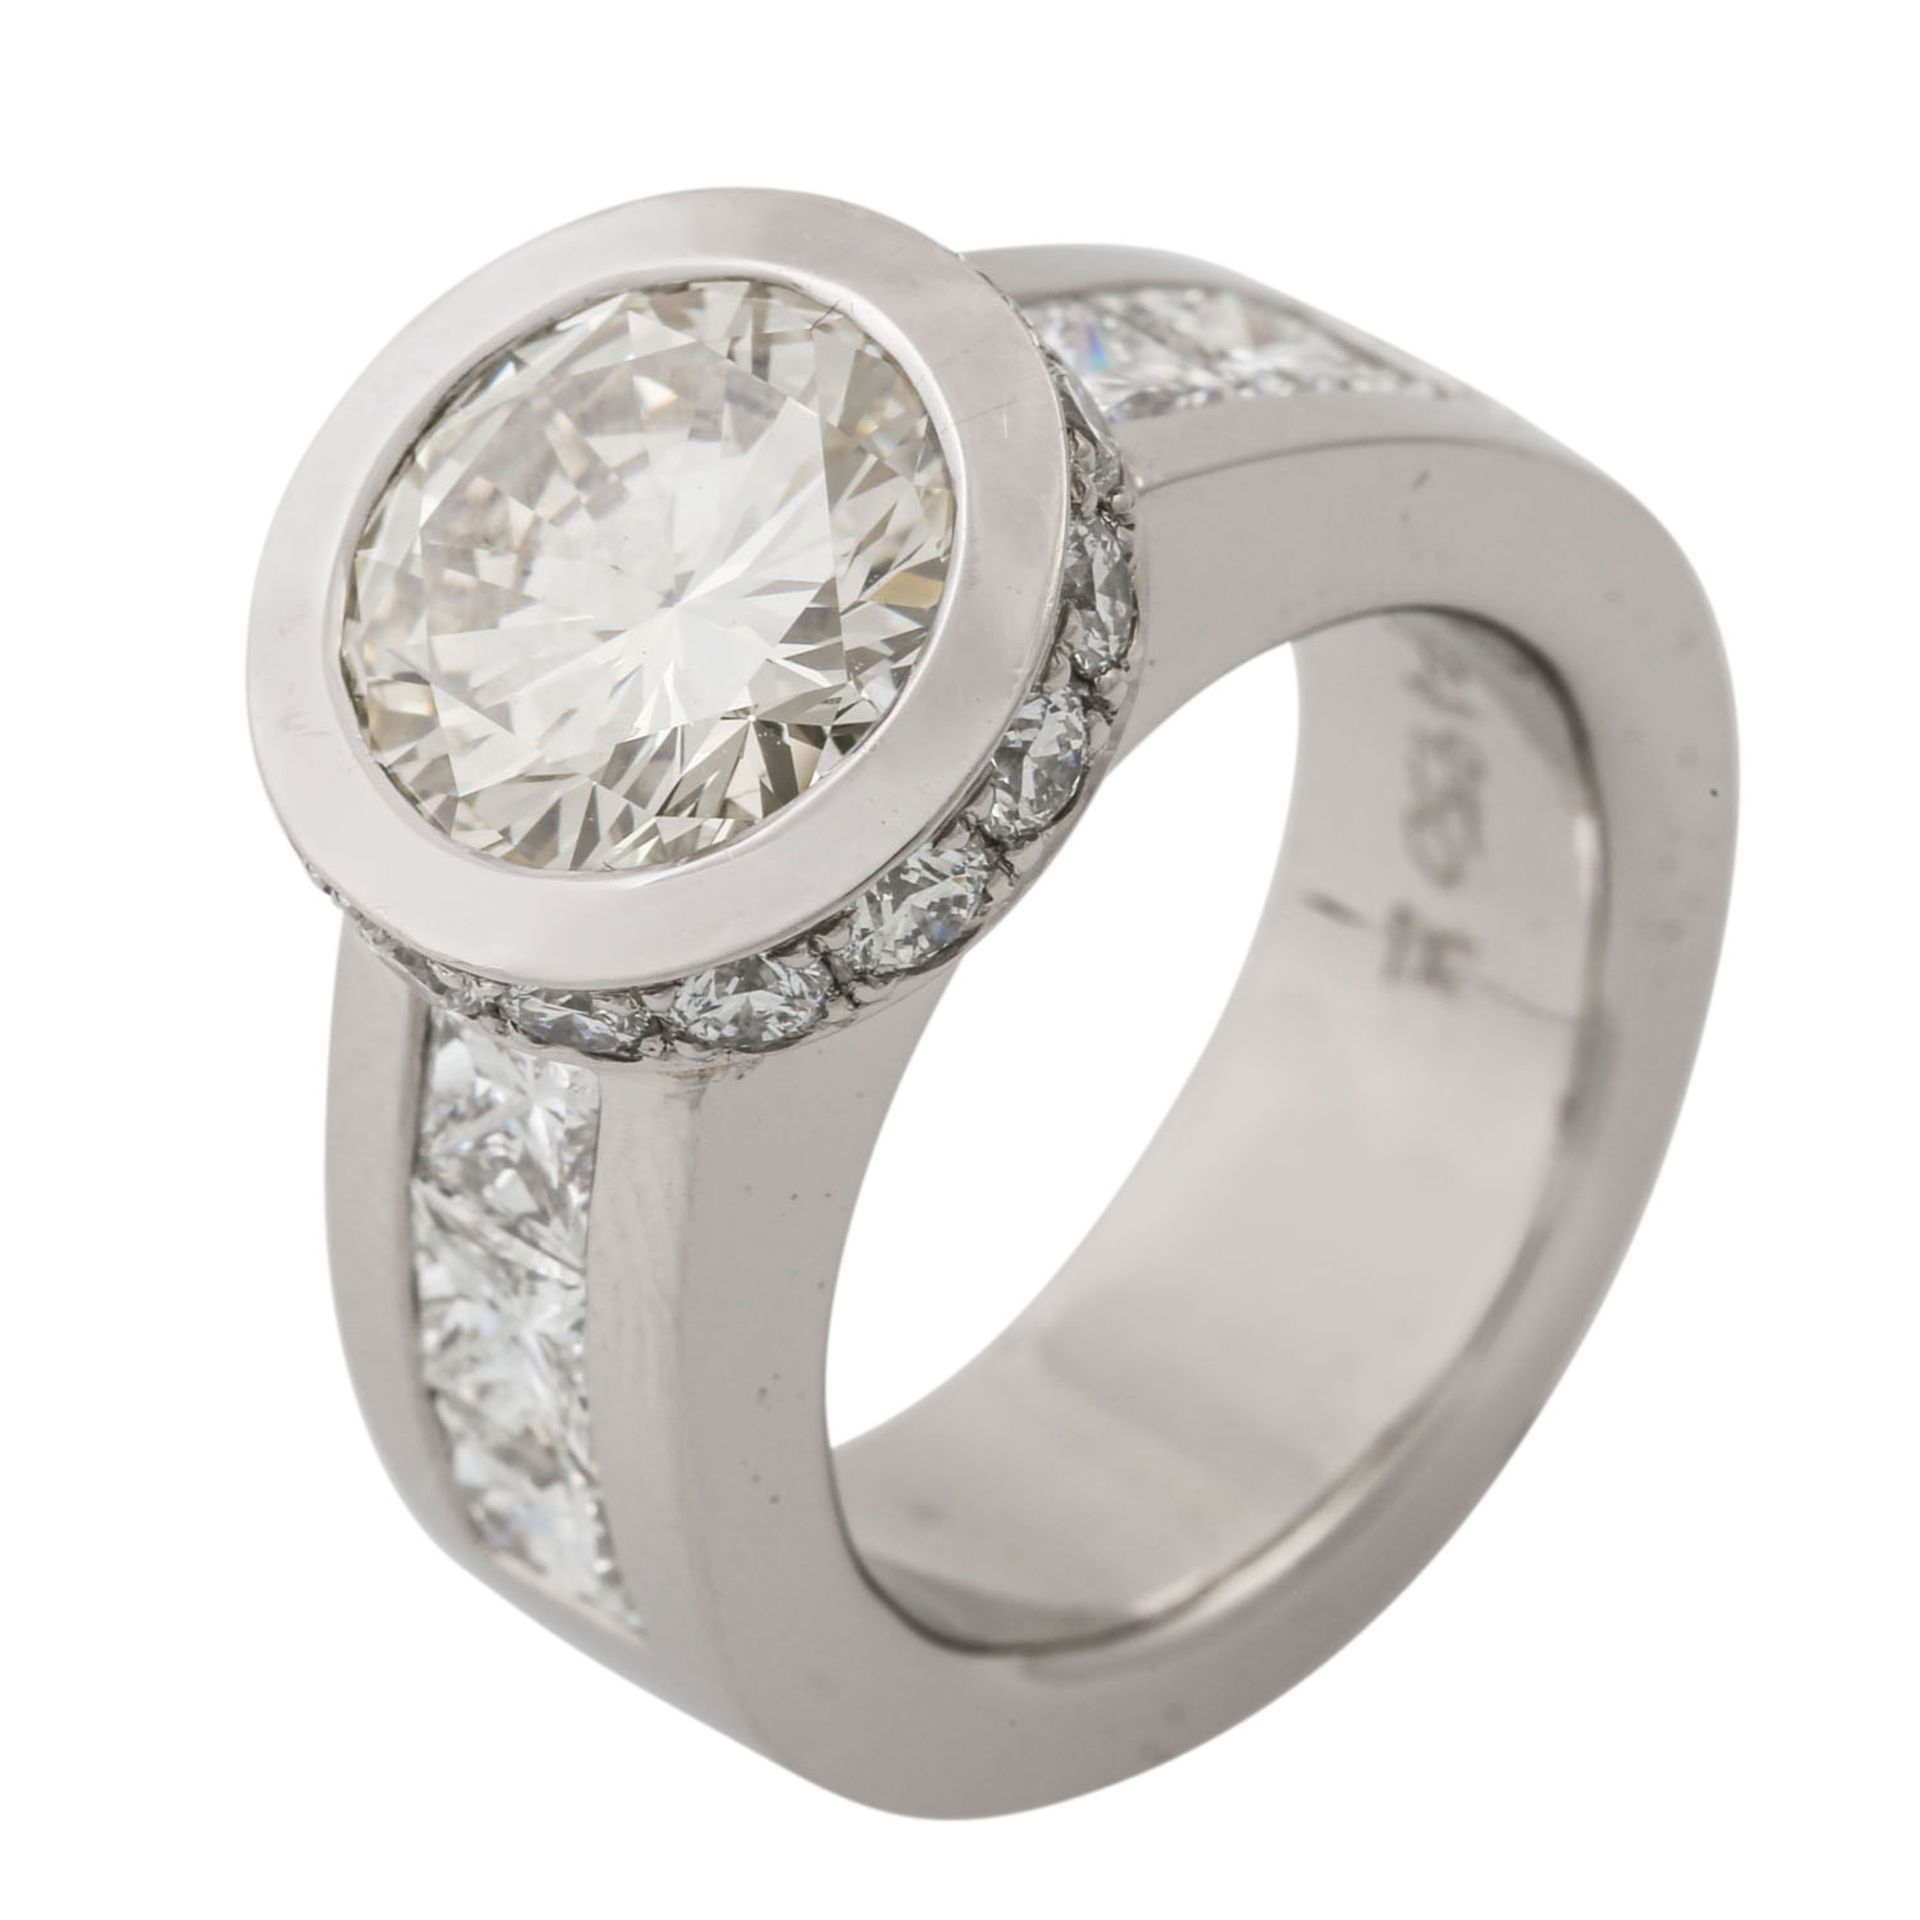 Ring mit Brillant von ca. 3 ct, 6 Prinzessdiamanten zus. ca.1,3 ct und 14 kl. Brillan - Image 6 of 7